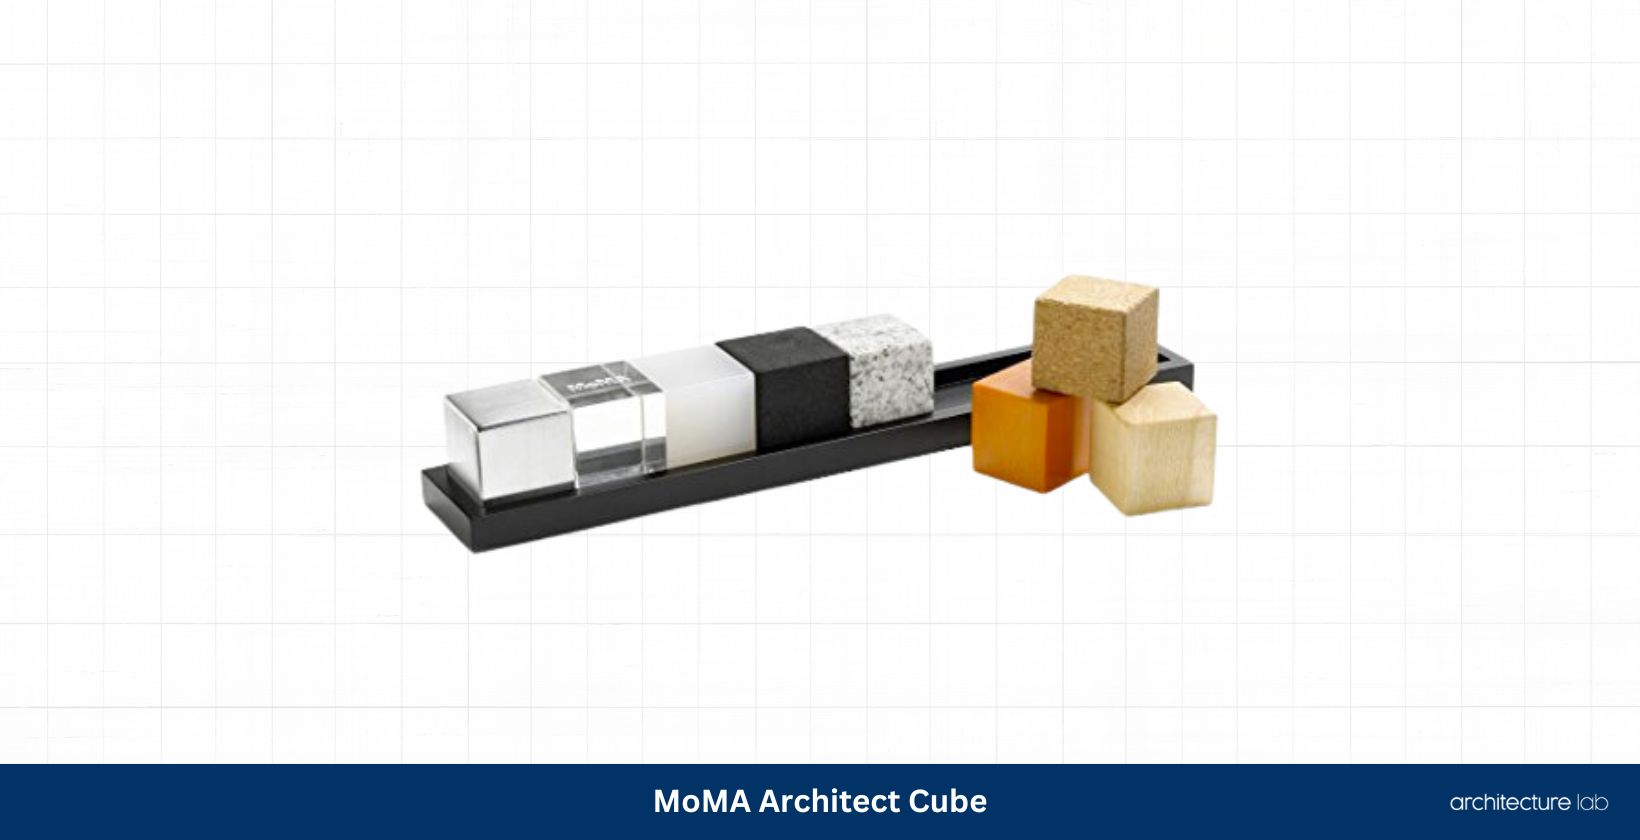 Moma architect cube